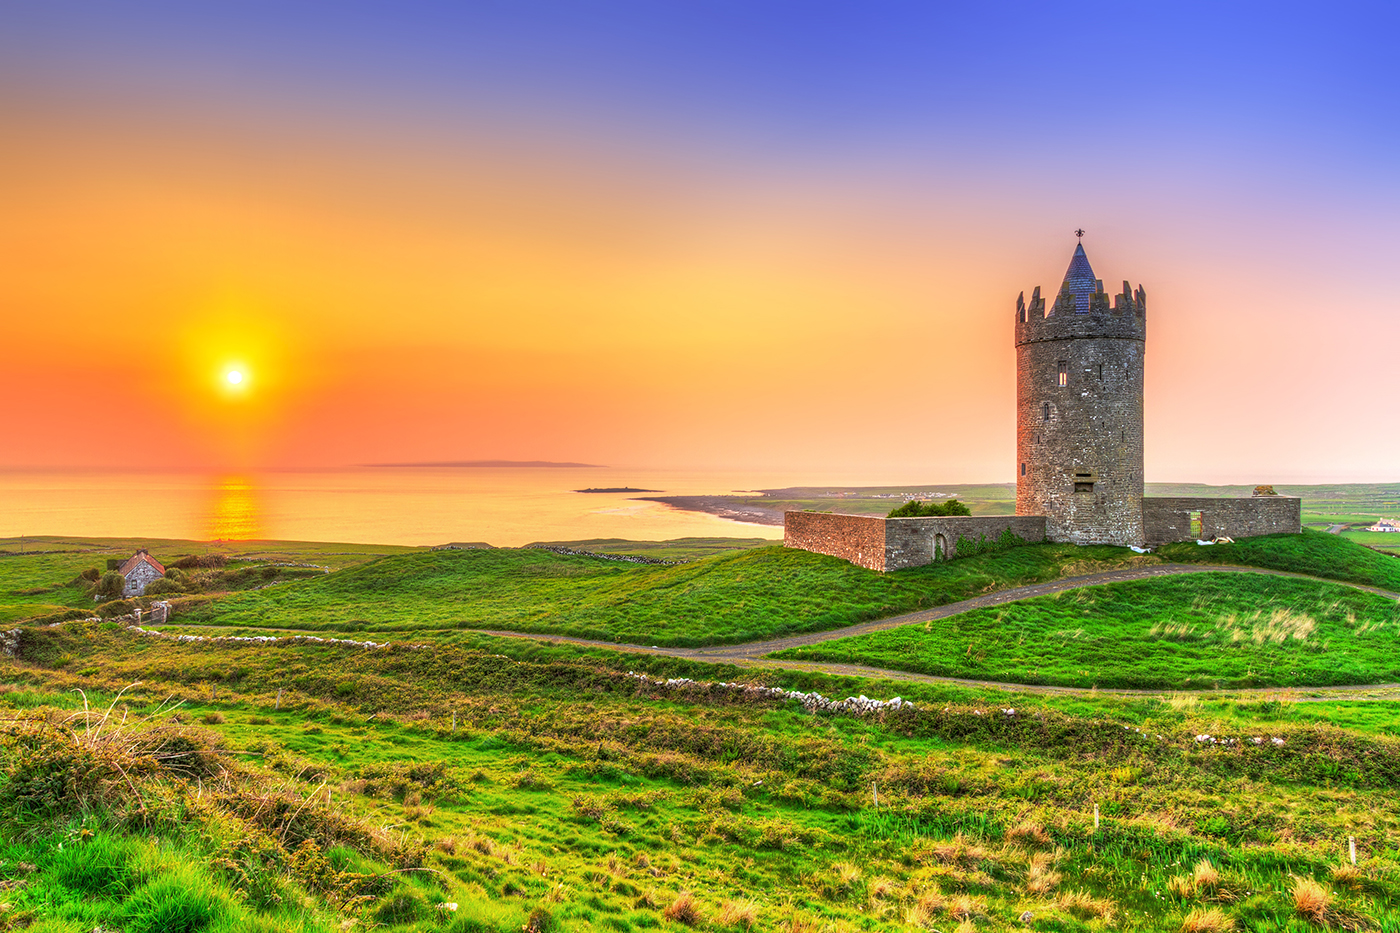 Doonagore castle, Co. Clare, Ireland.